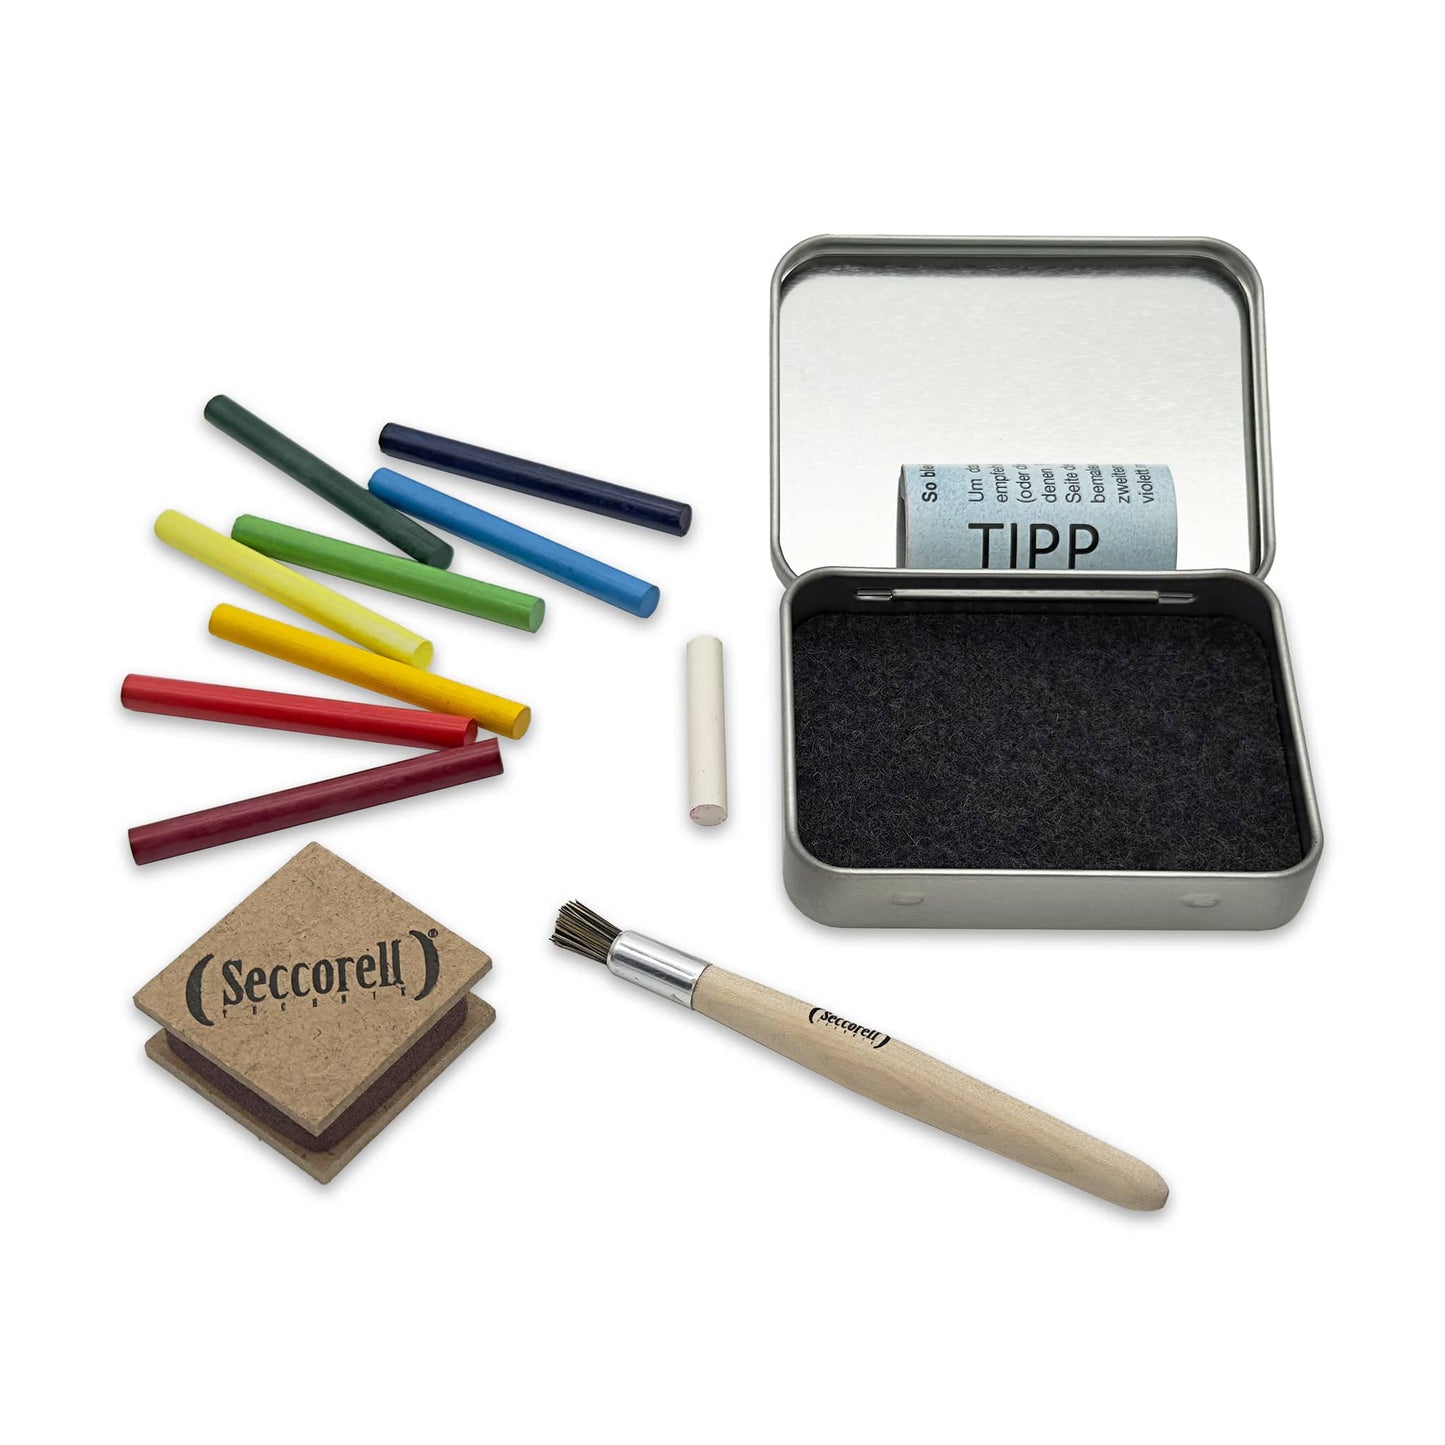 Seccorell Pocket "Hase", zeigt alle Utensilien für die Maltechnik, einschließlich 8 Farbstäbchen, Reibeblock, Reinigungsbürste, Radierer in einer praktischen Metallbox mit Filzeinlage.